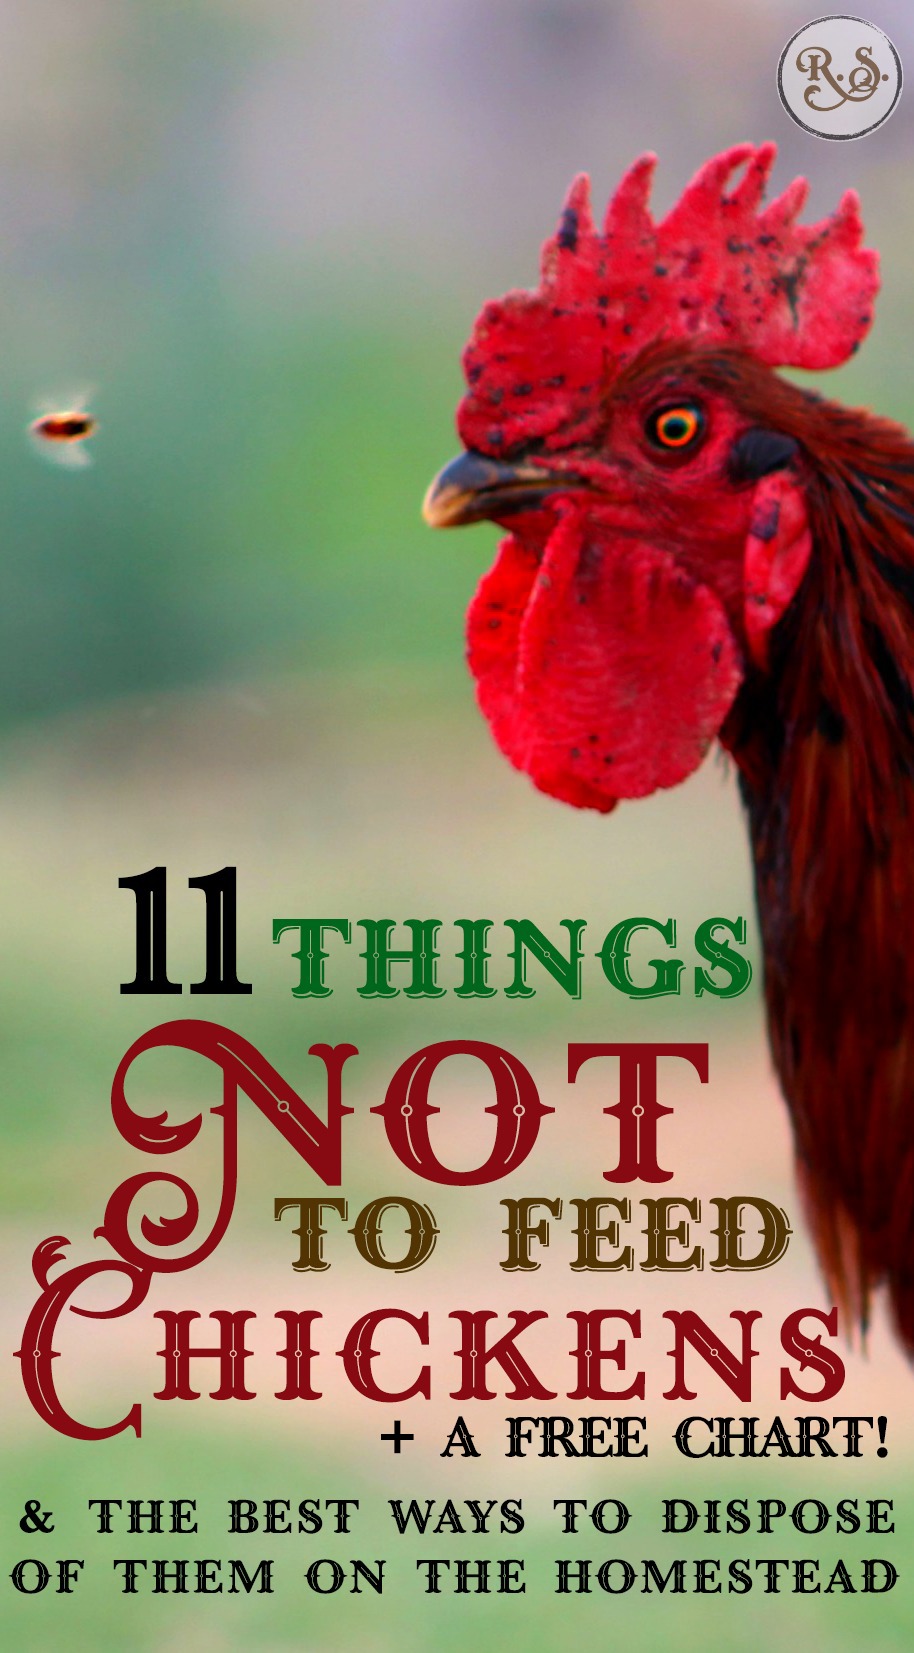 fodring af opdræt af baggårdskyllinger er let, men du skal vide, hvilke fødevarer der ikke skal fodres med kyllinger. Når du har lært, hvad de ikke kan spise, lærer vi den bedste måde, du ressourcefuldt kan bortskaffe dem på.